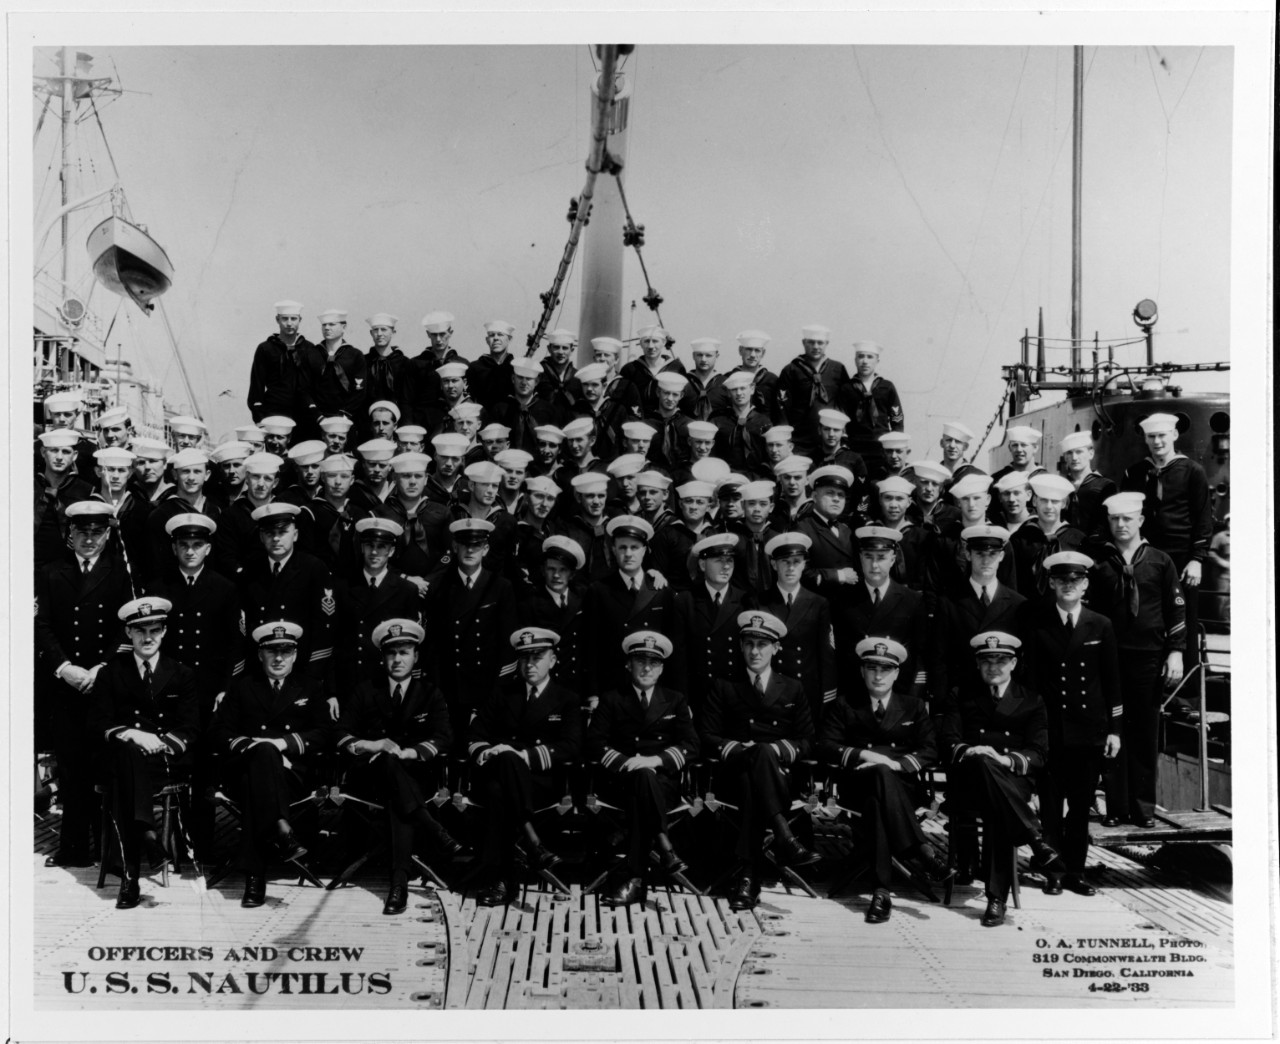 USS NAUTILUS (SS-168)